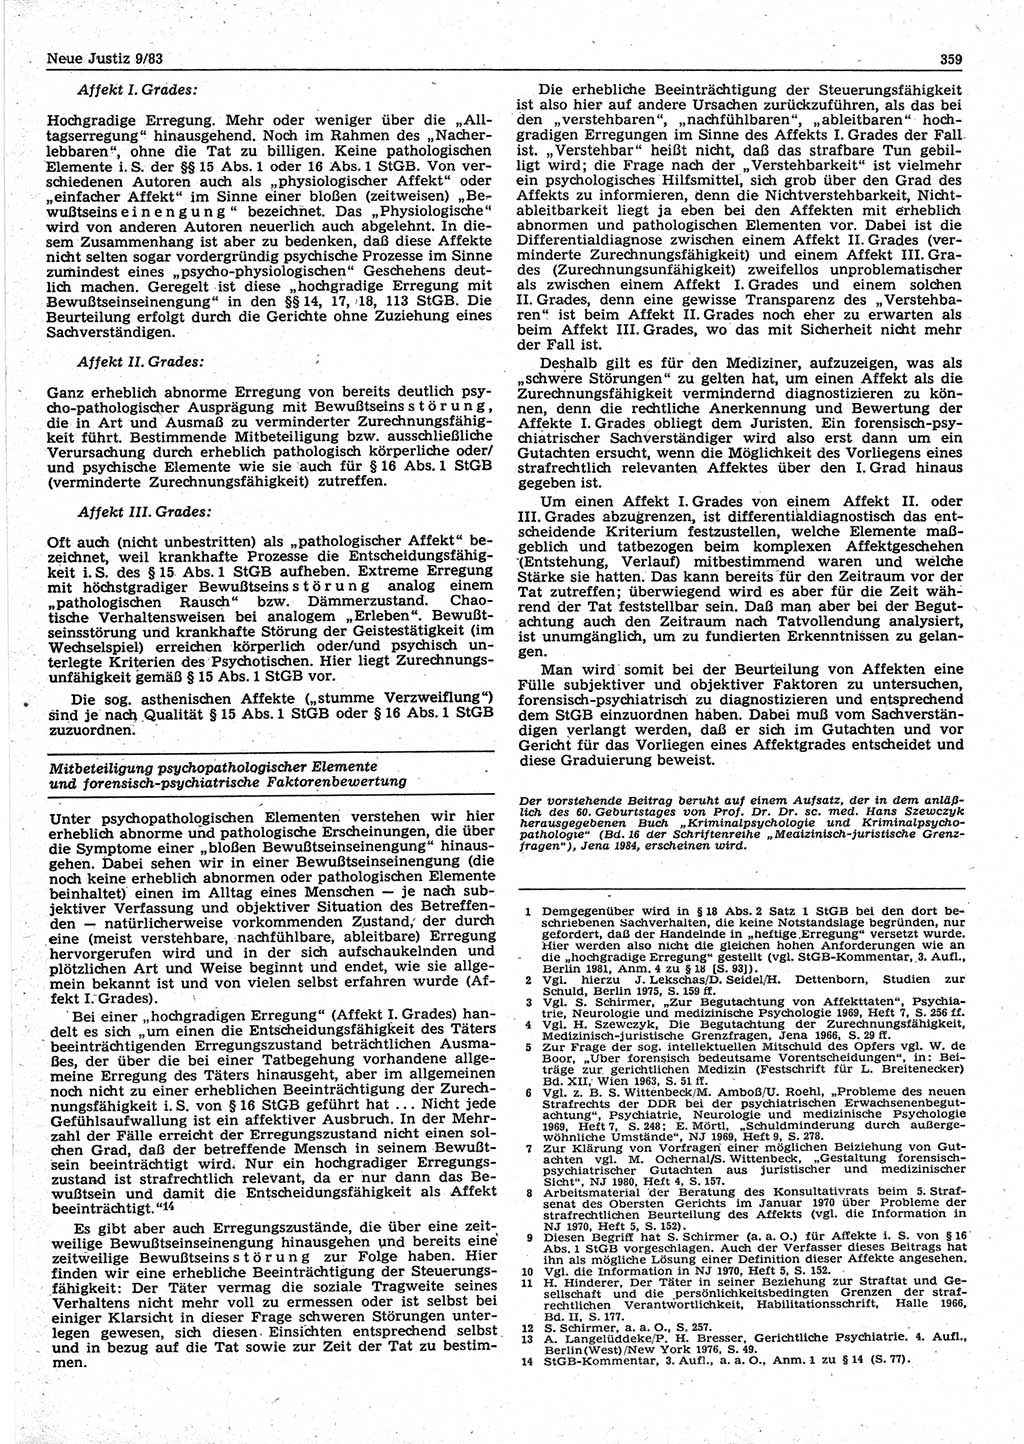 Neue Justiz (NJ), Zeitschrift für sozialistisches Recht und Gesetzlichkeit [Deutsche Demokratische Republik (DDR)], 37. Jahrgang 1983, Seite 359 (NJ DDR 1983, S. 359)